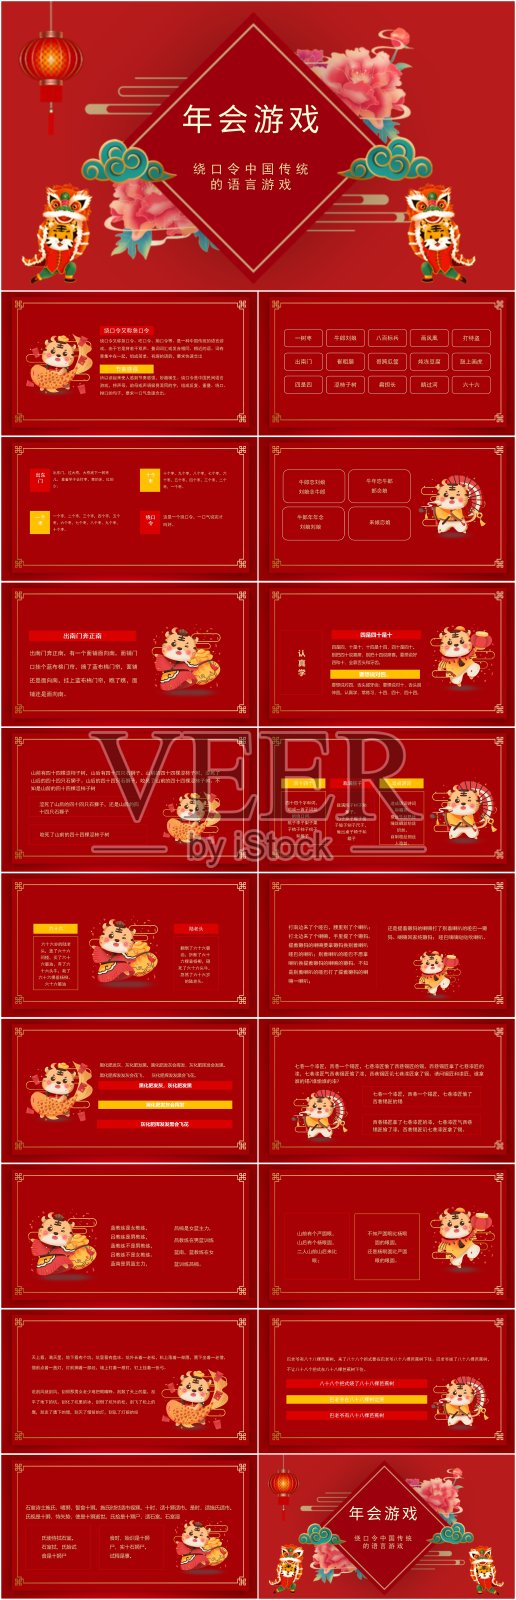 红色绕口令中国传统的语言游戏动态PPT设计模板素材